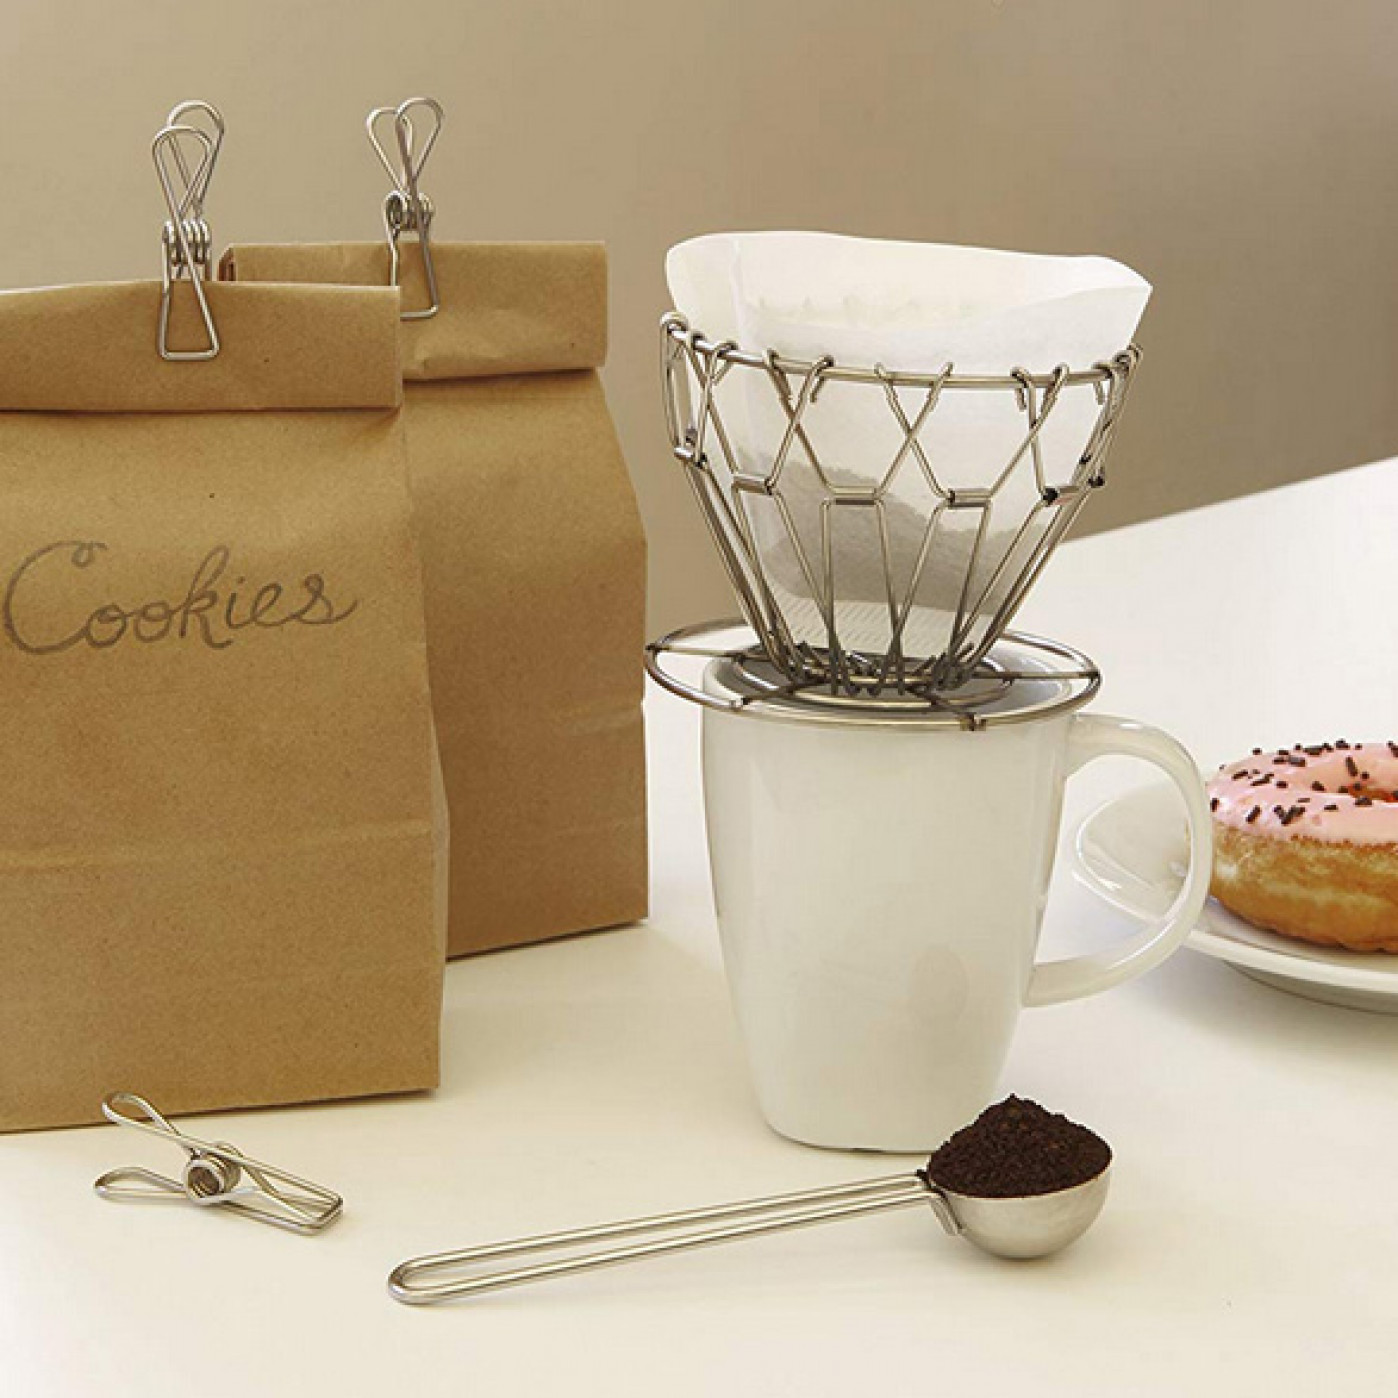 Набор из 5 предметов для приготовления кофе Pour Over Coffe Kit Kikkerland